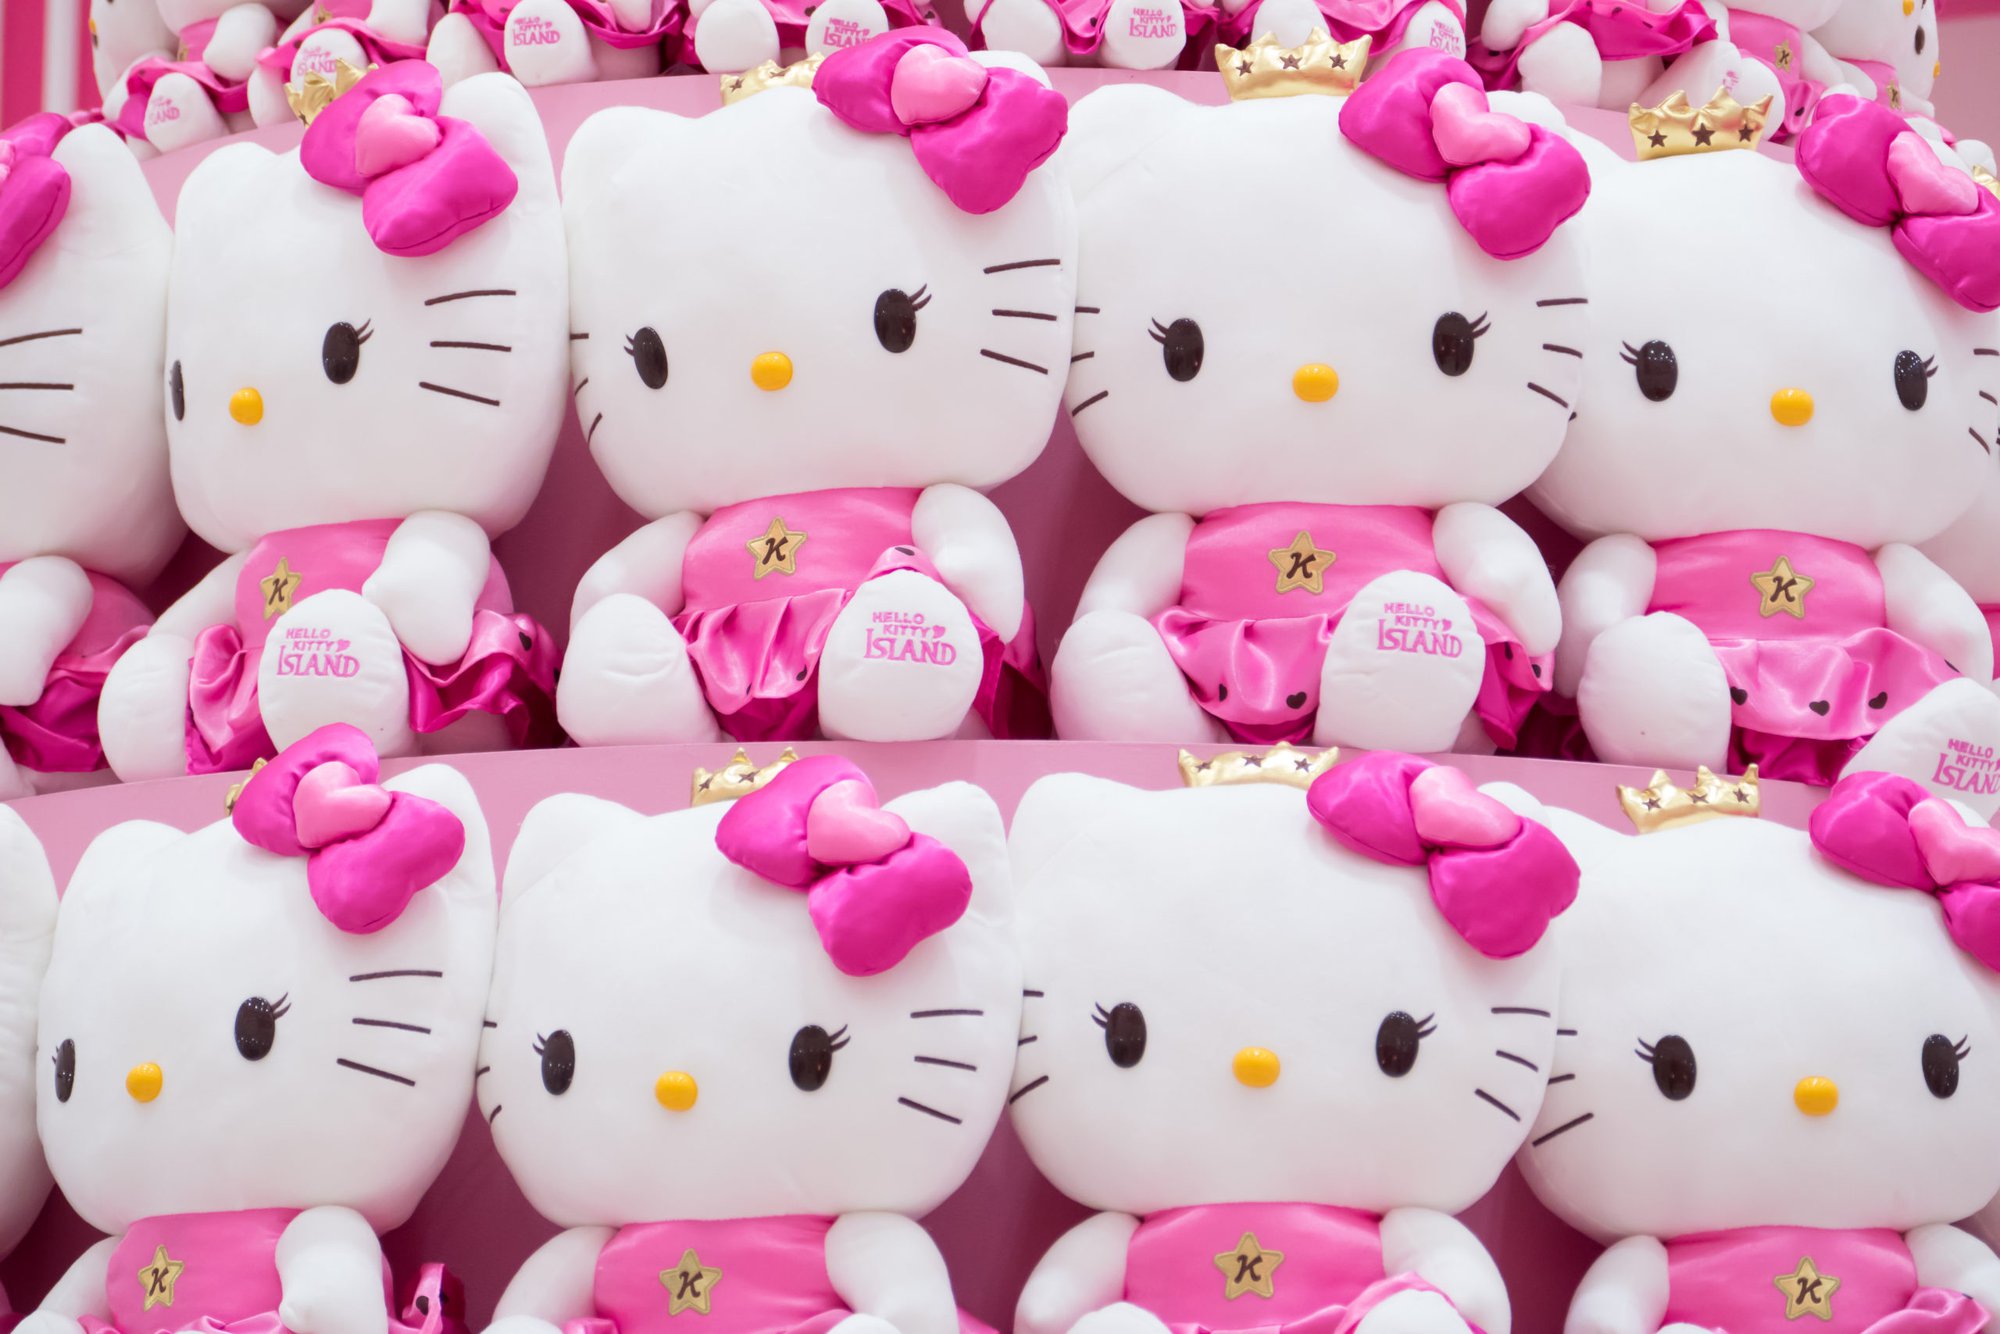 Những lý do giúp Hello Kitty trở thành biểu tượng nổi tiếng toàn cầu dù không xuất phát từ bộ truyện hay phim ảnh nào  - Ảnh 5.